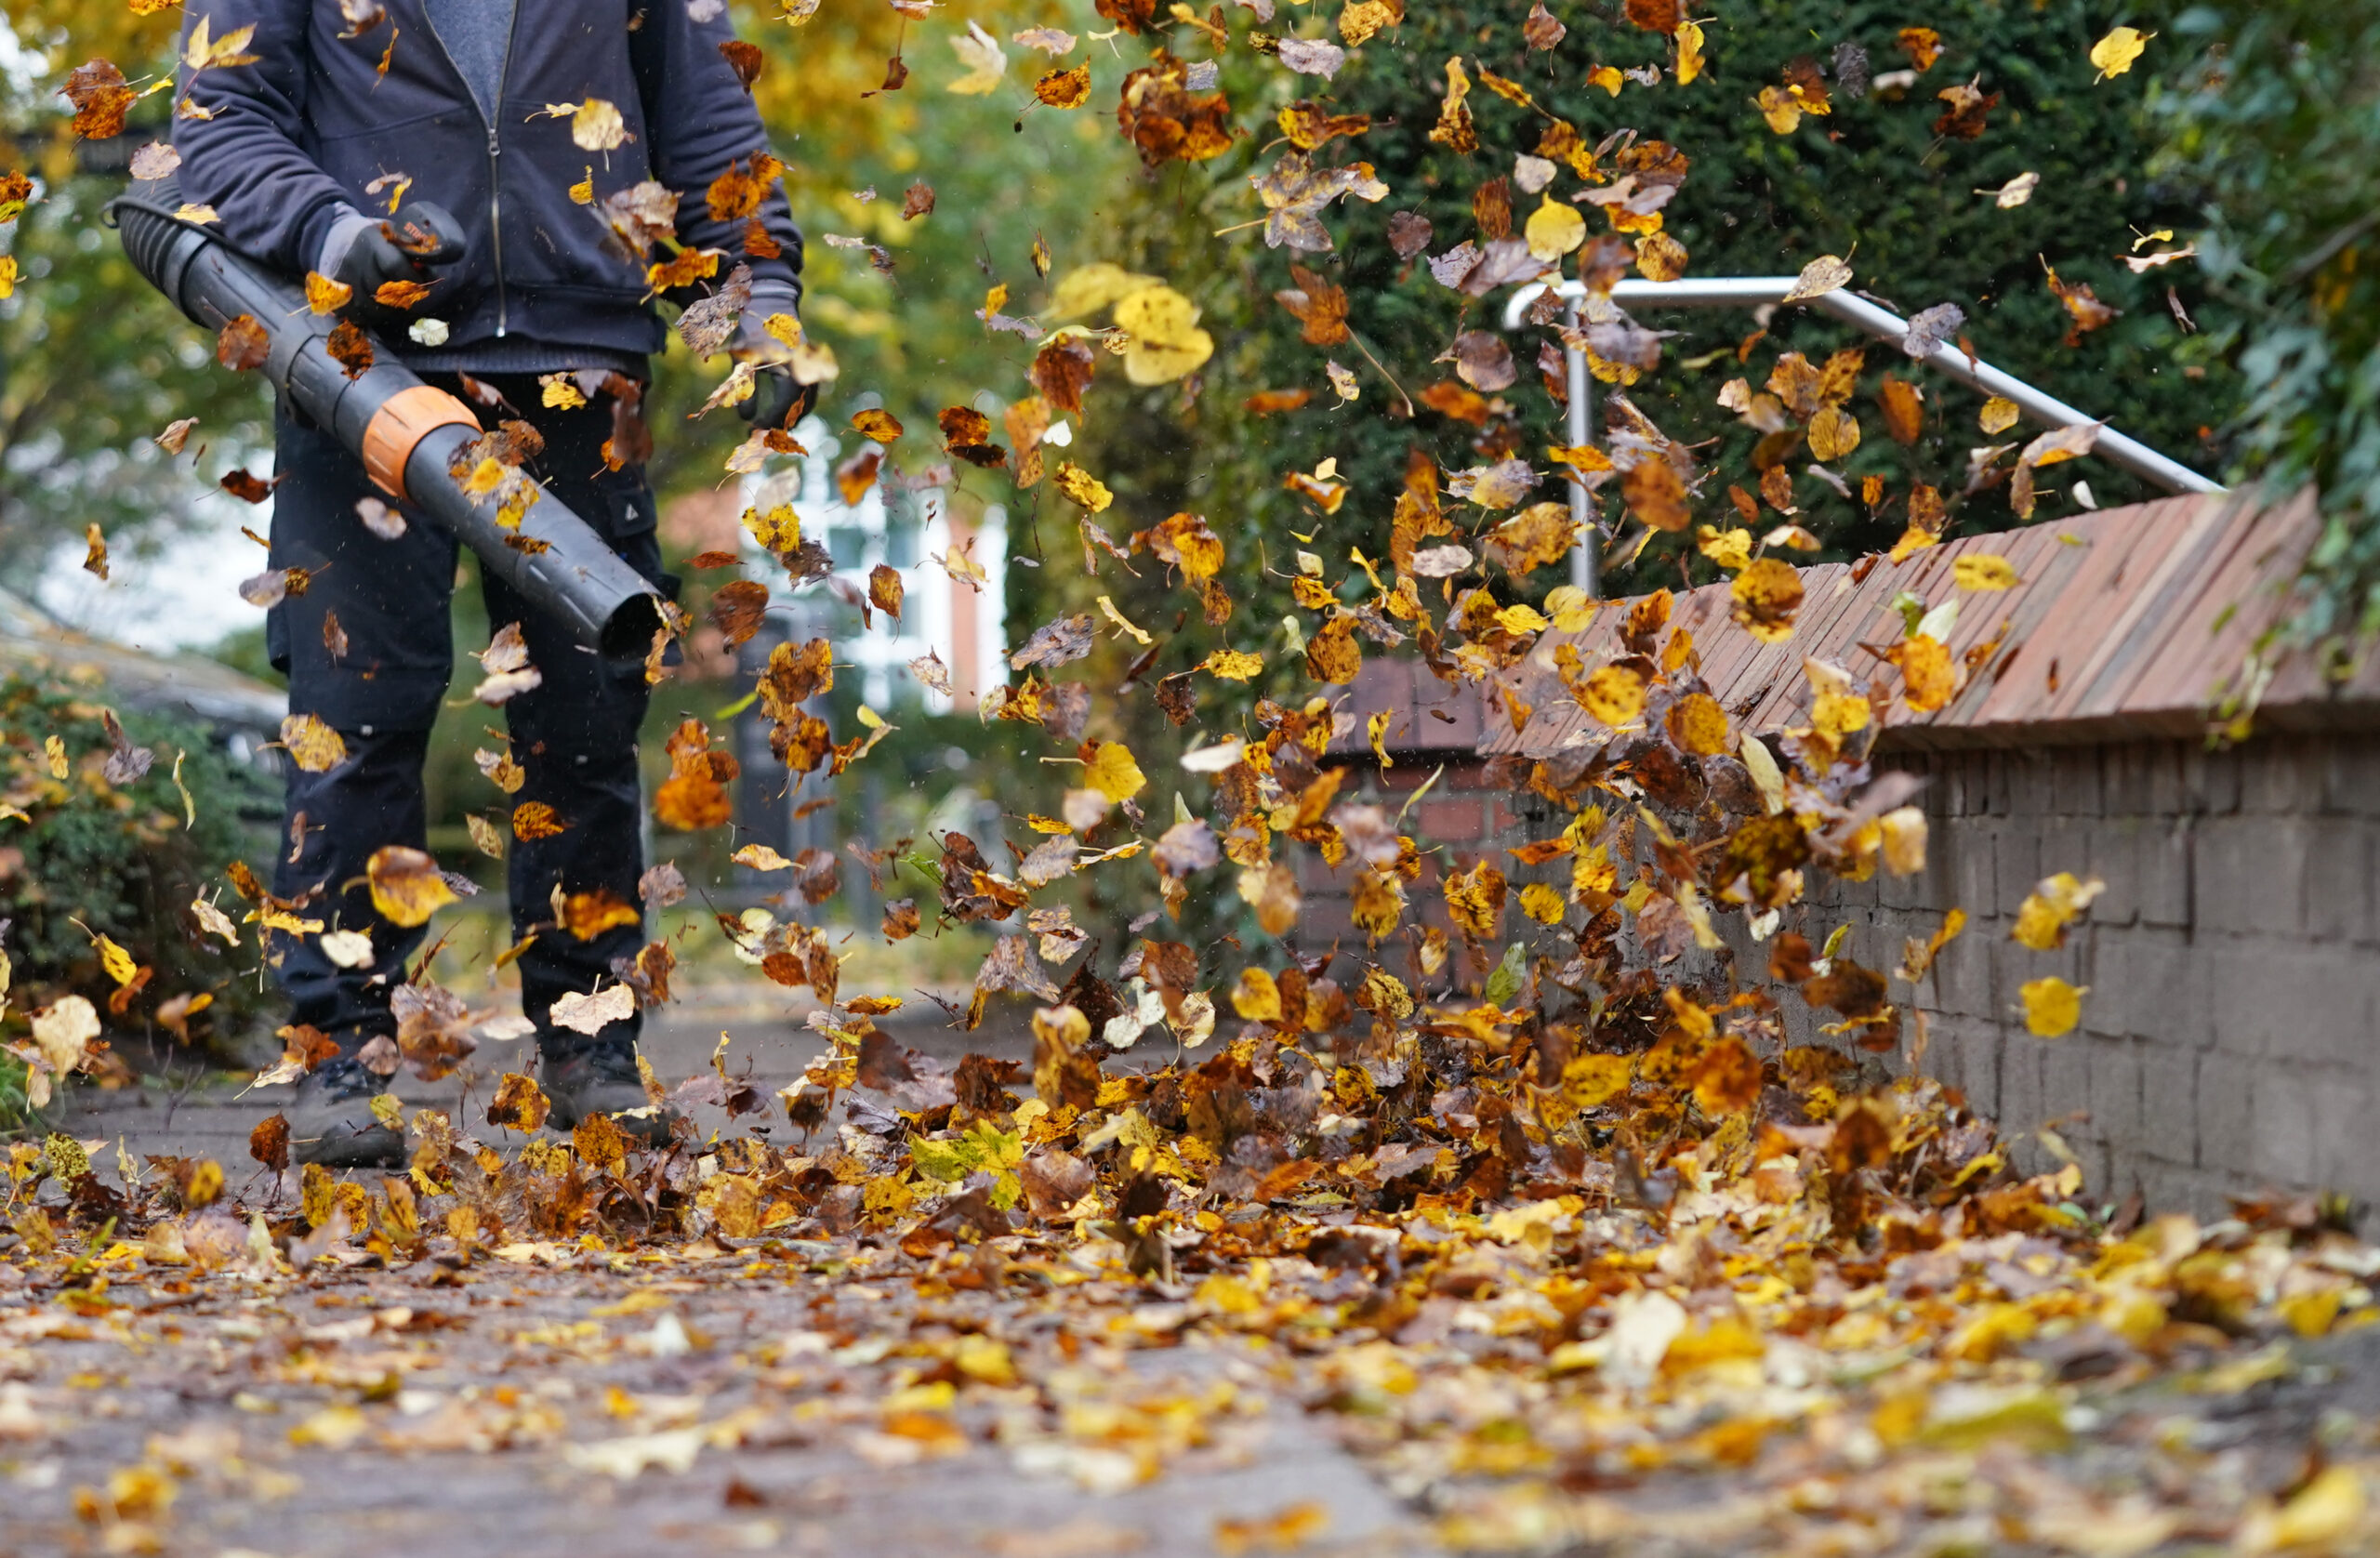 Ein Mann entfernt mit einem Laubbläser das Herbstlaub von einem Gehweg.